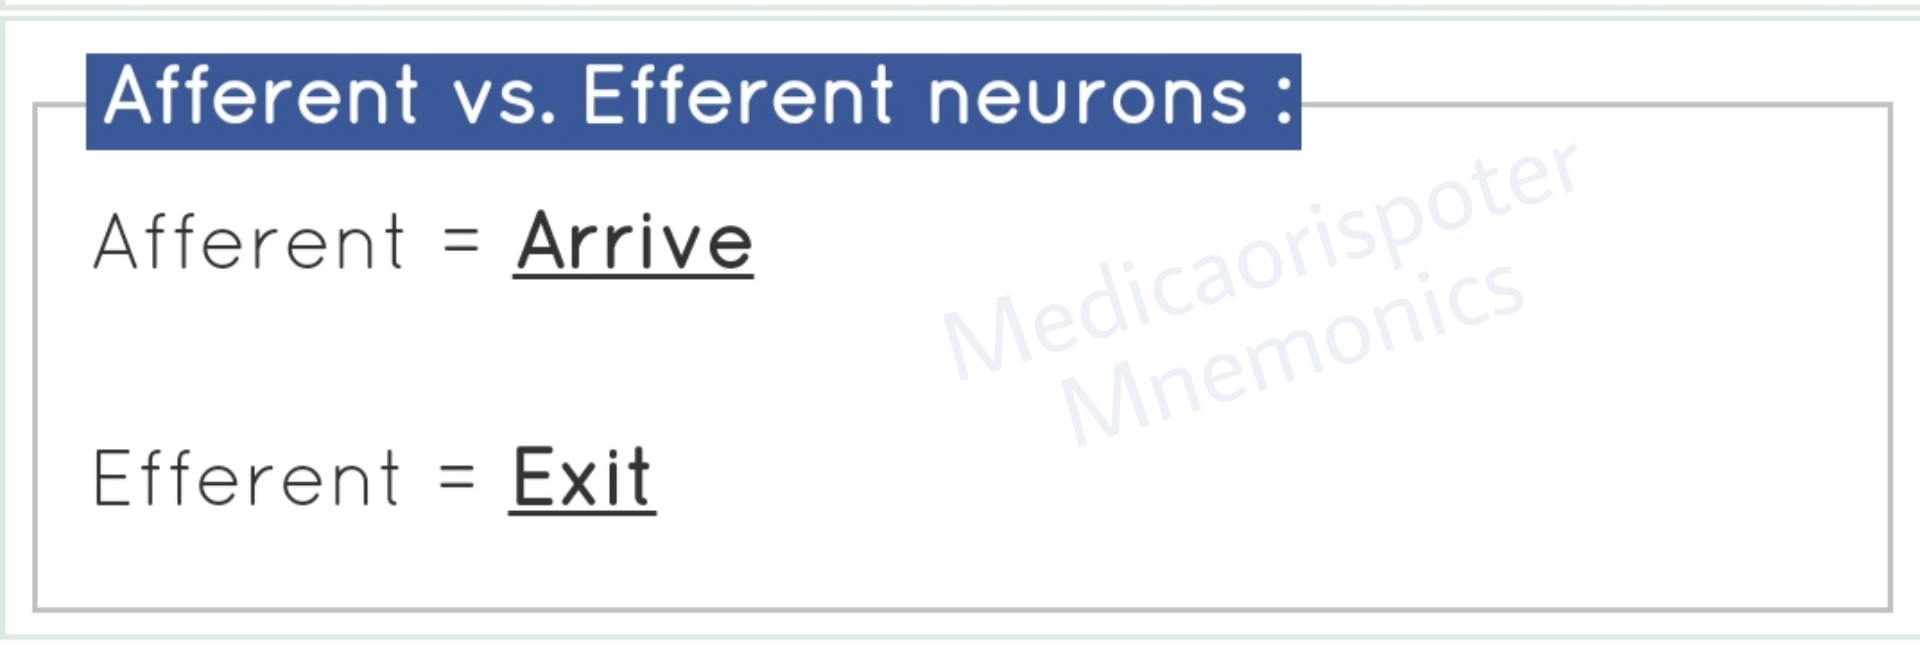 Afferent vs Efferent Neurons